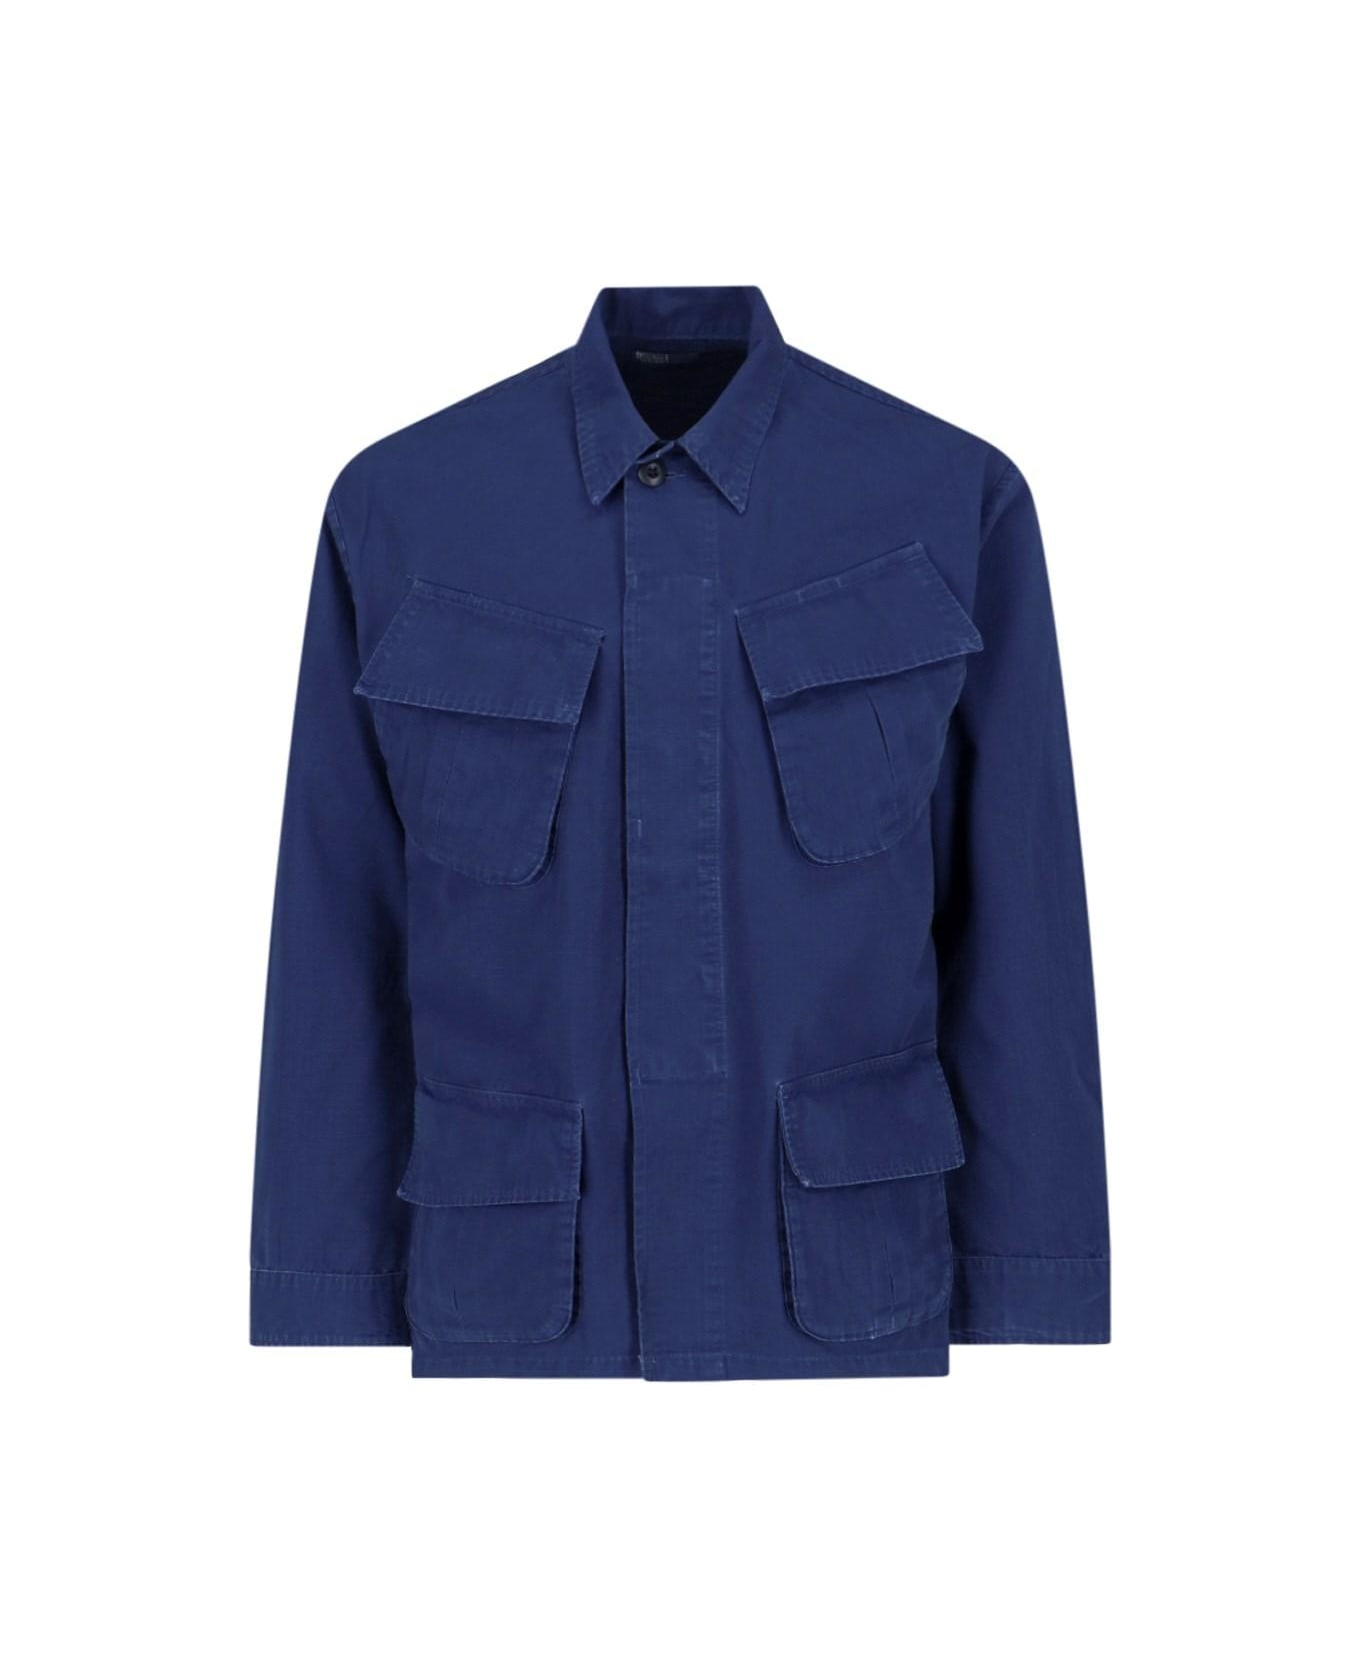 Polo Ralph Lauren Shirt Jacket - Newport Navy